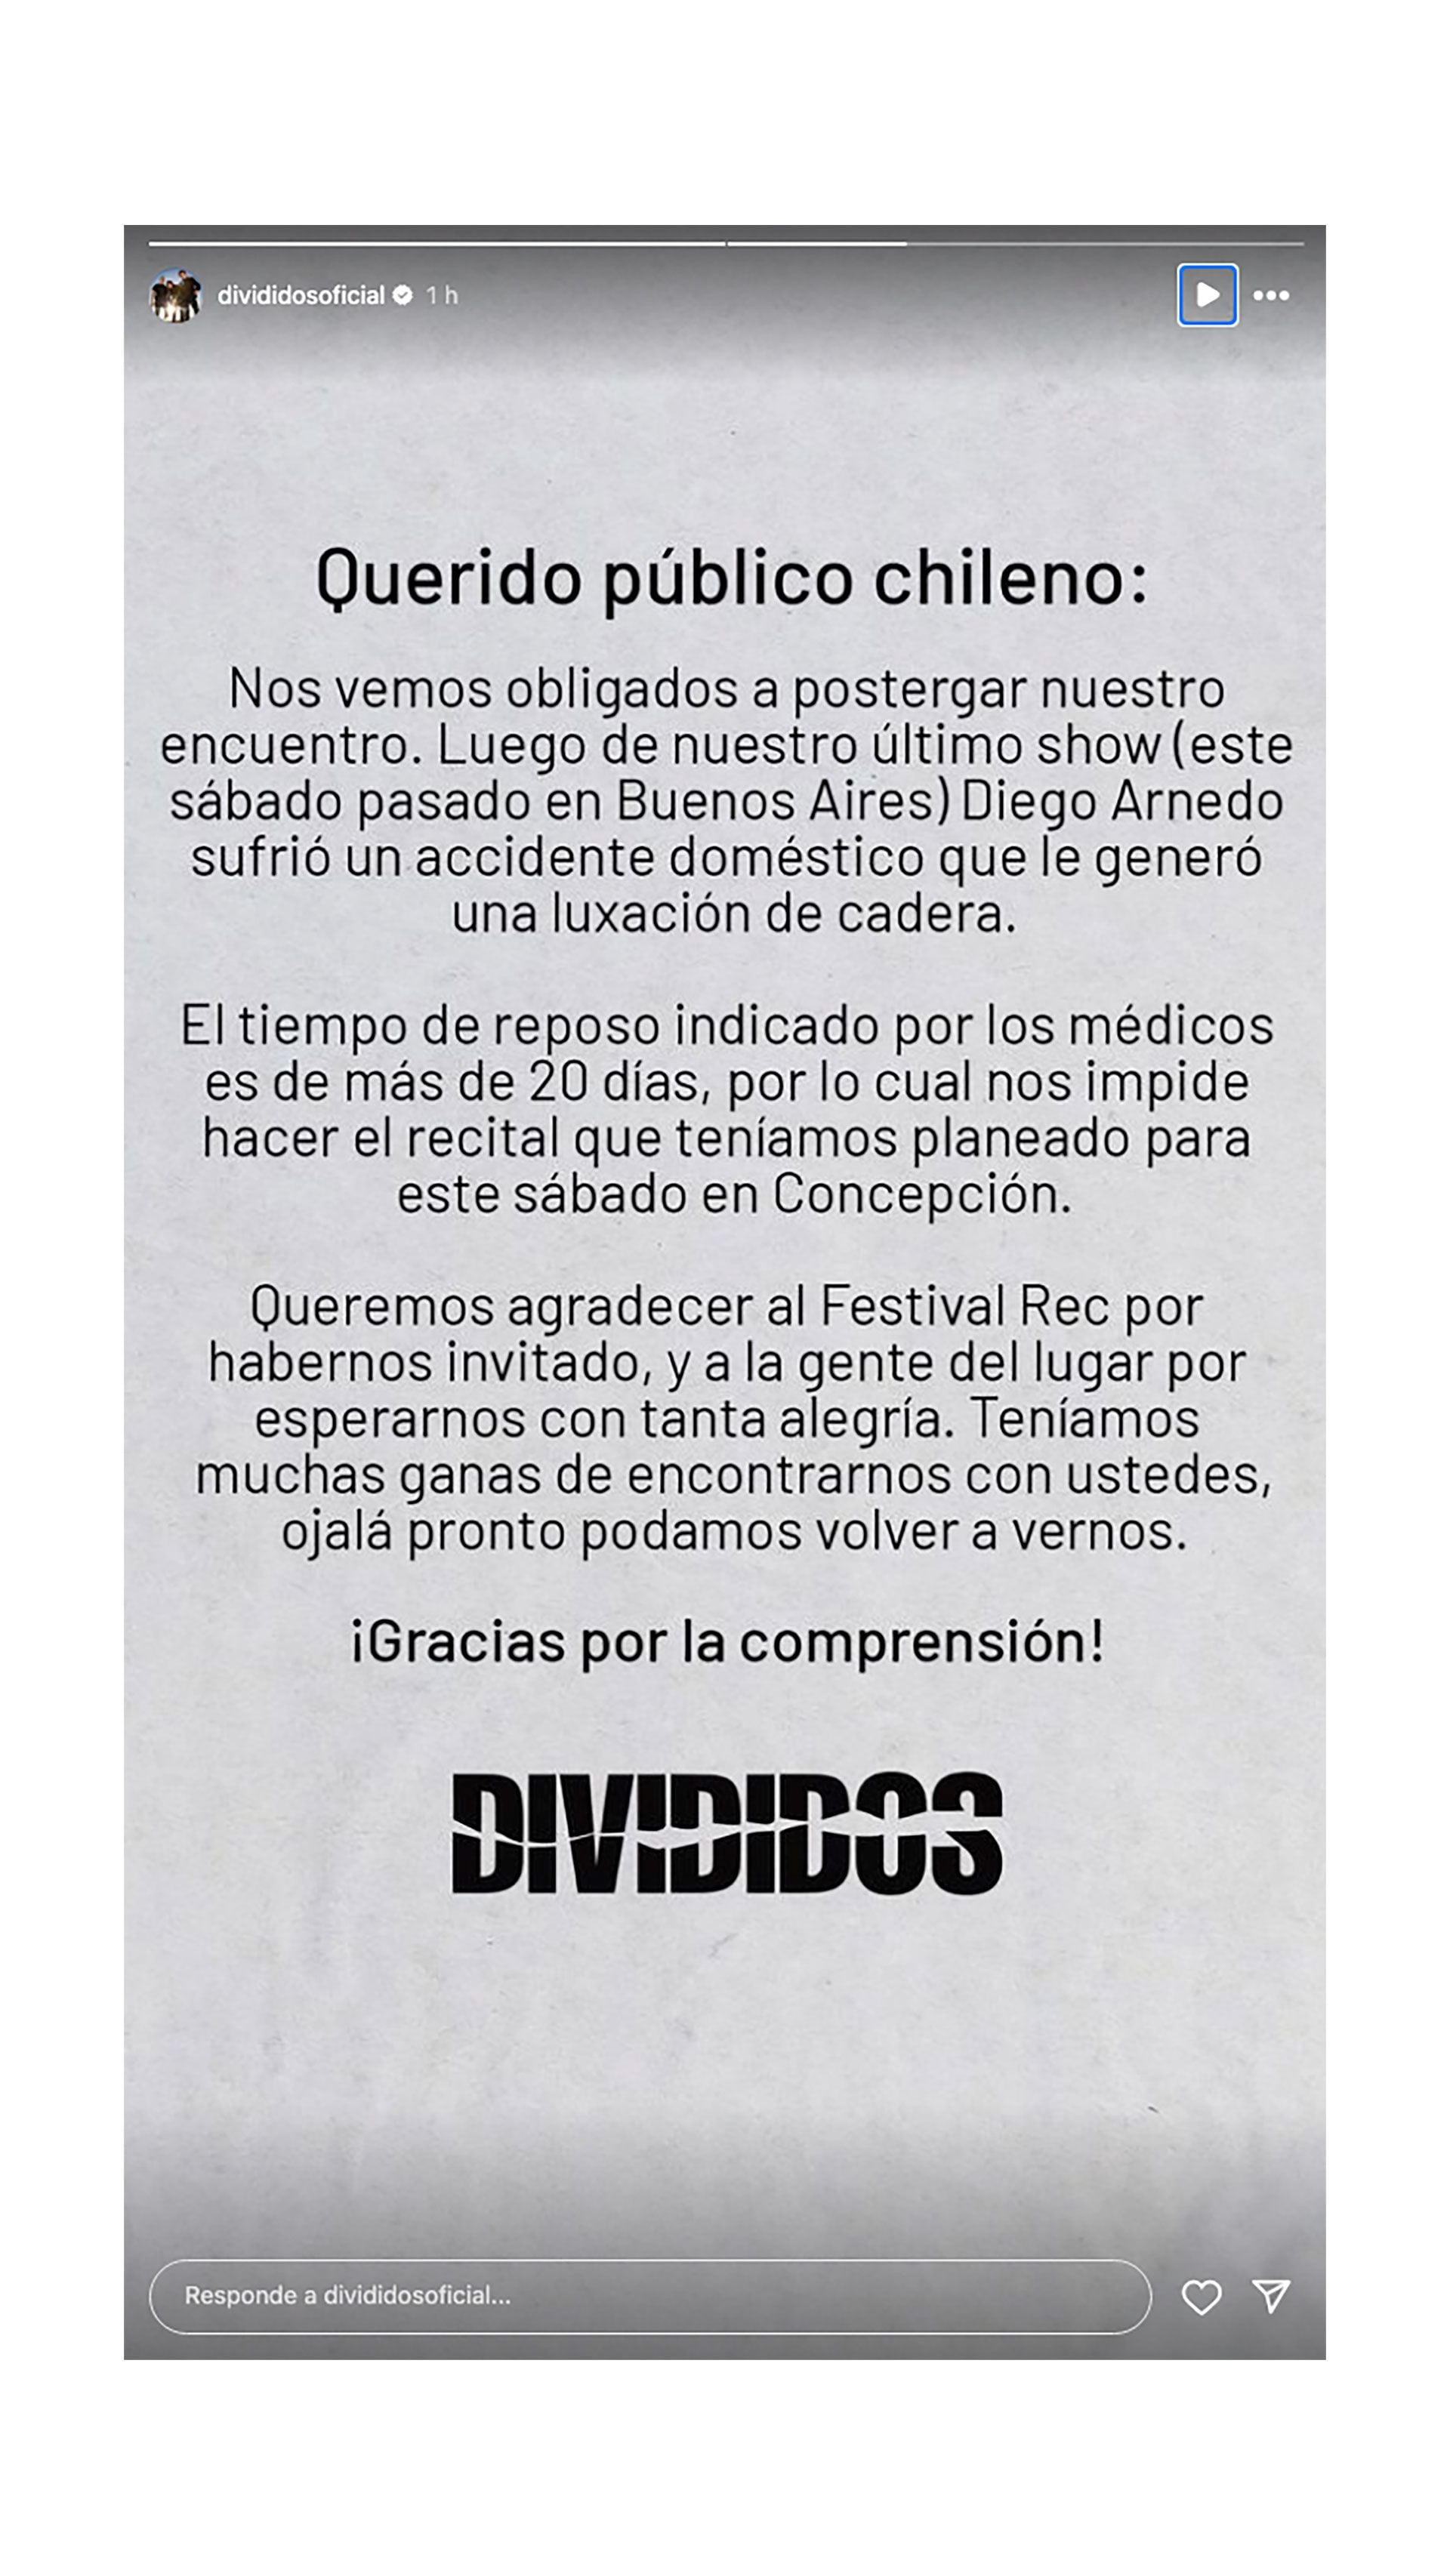 Diego Arnedo sufrió un accidente doméstico y Ricardo Mollo anunció que Divididos suspendió su próximo show